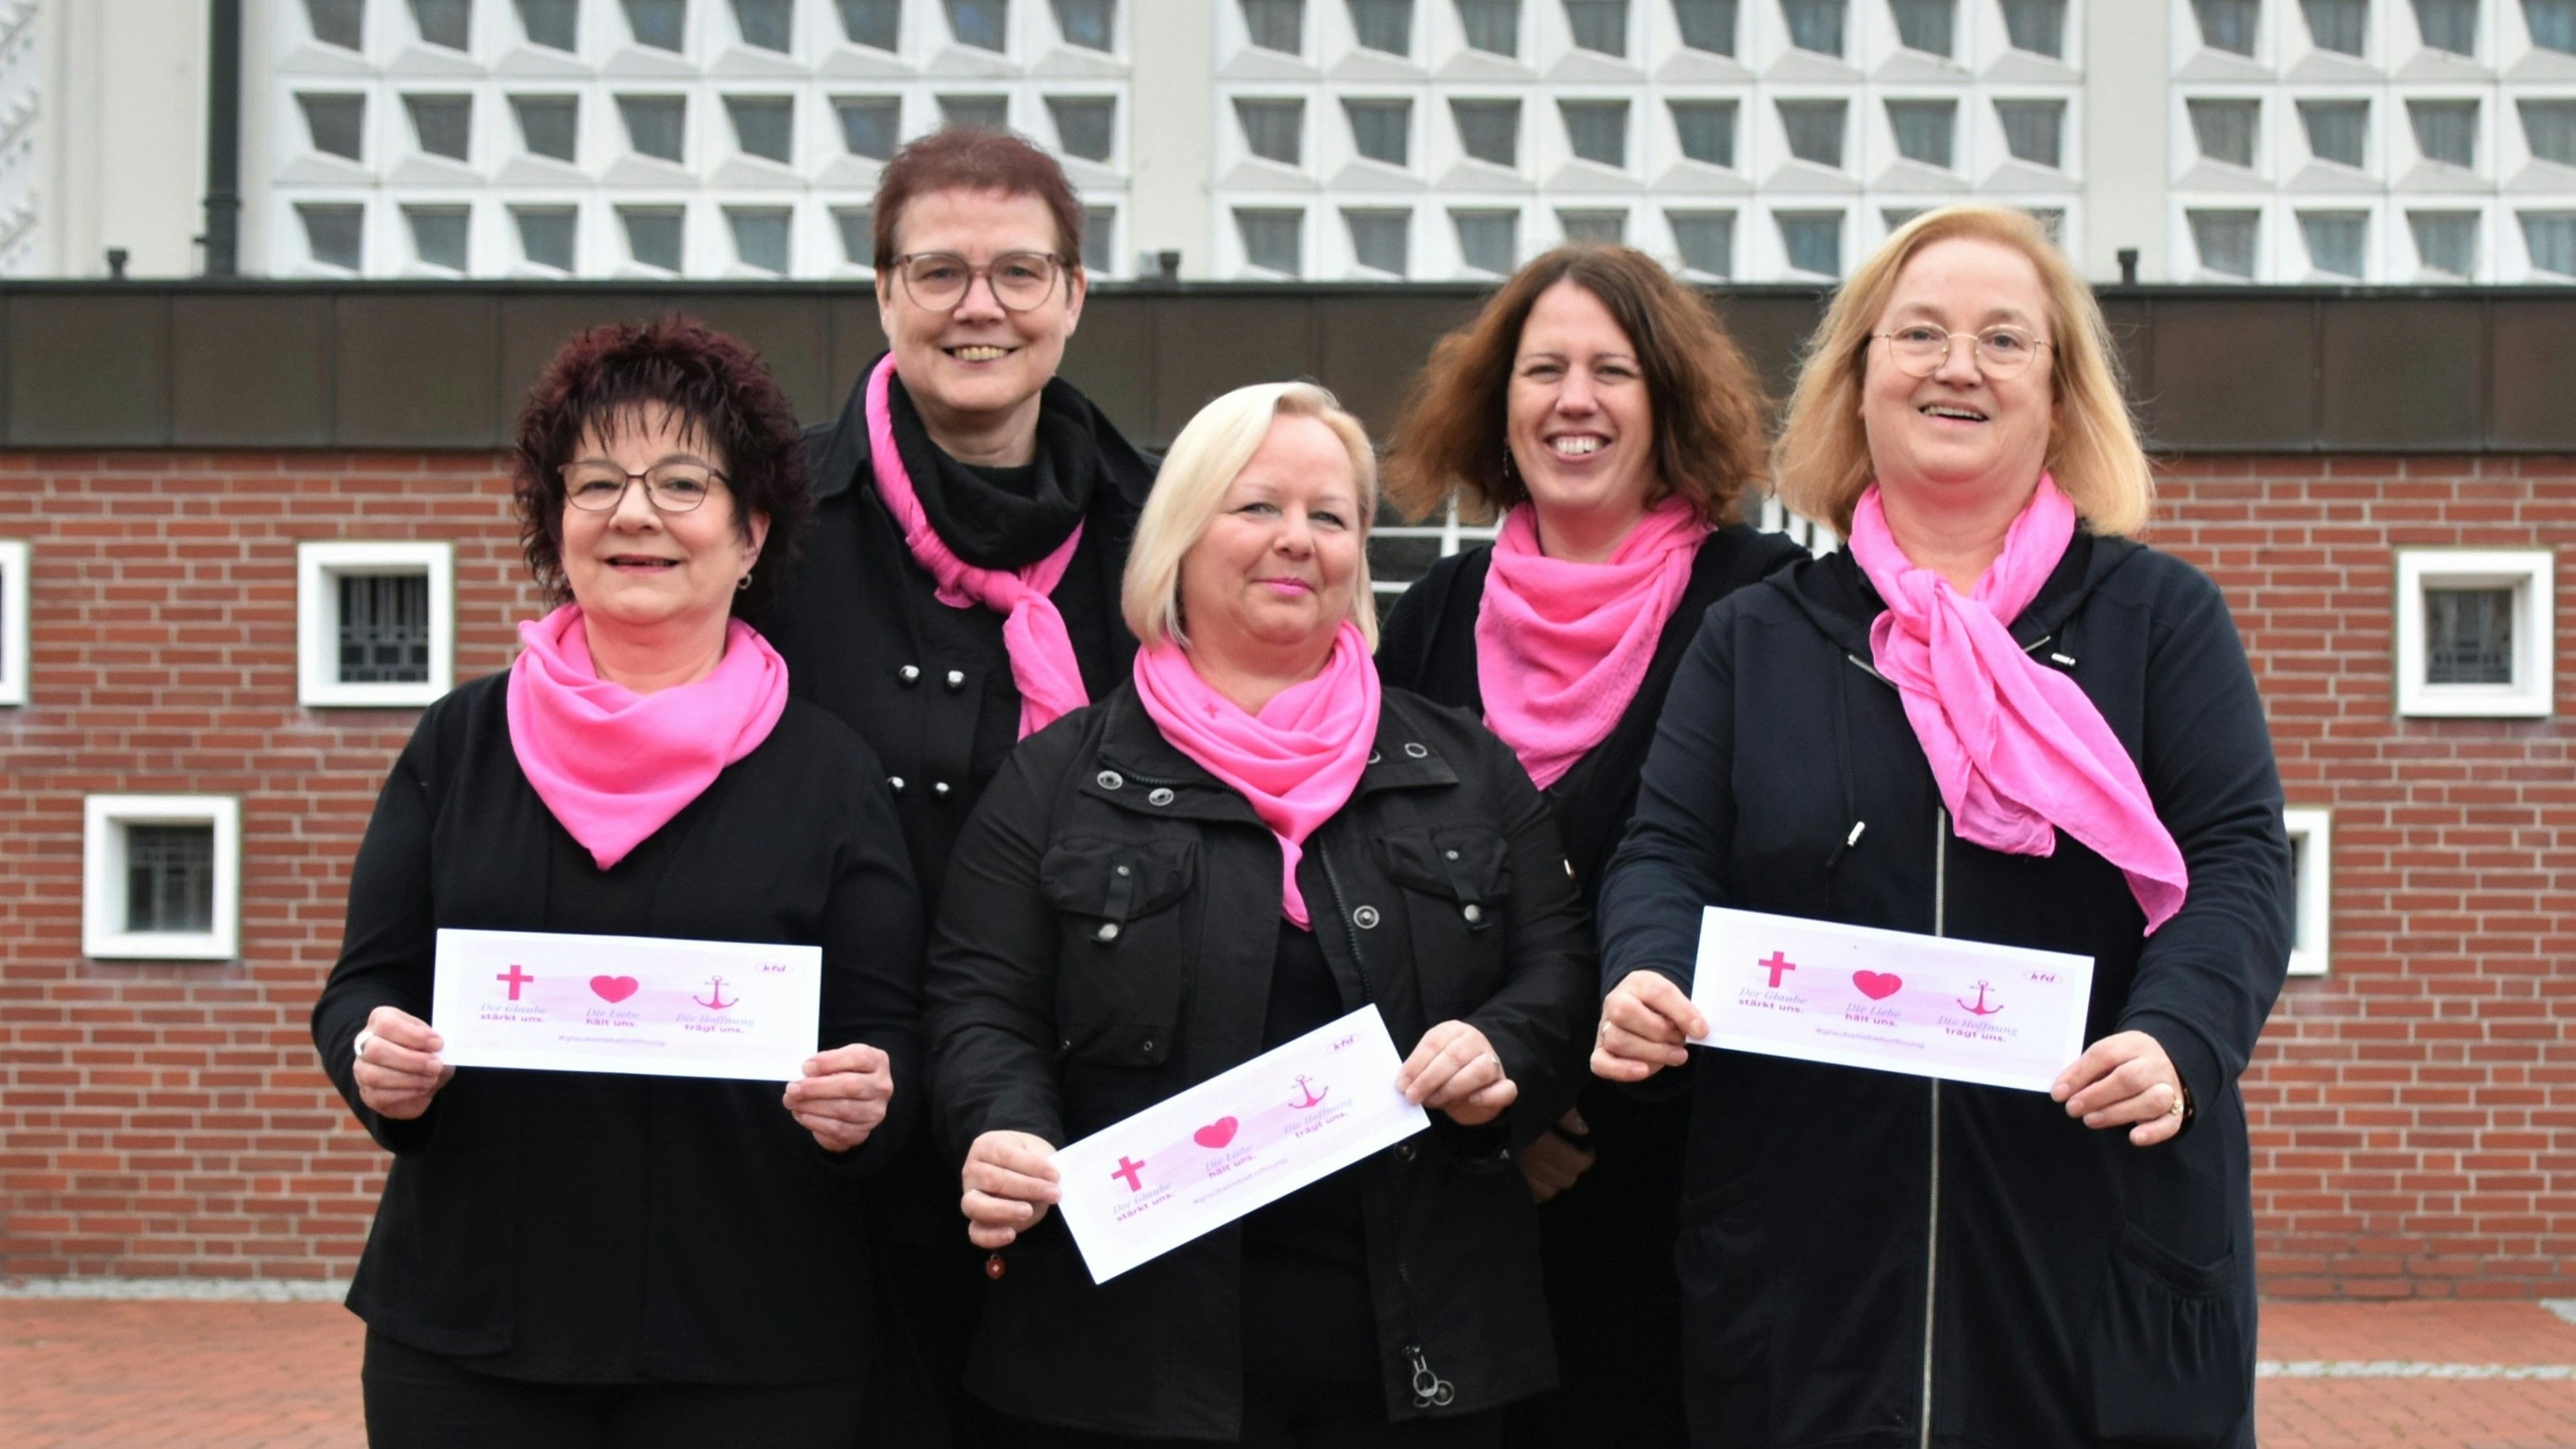 Laden ein: Marlies Willer (von links), Marlies Brinkmann, Resi Ortmann, Karina Schrand und Maria Kalmlage möchten mit ihren Mitgliedern das 25. Jubiläum der KFD feiern. Foto: Hahn